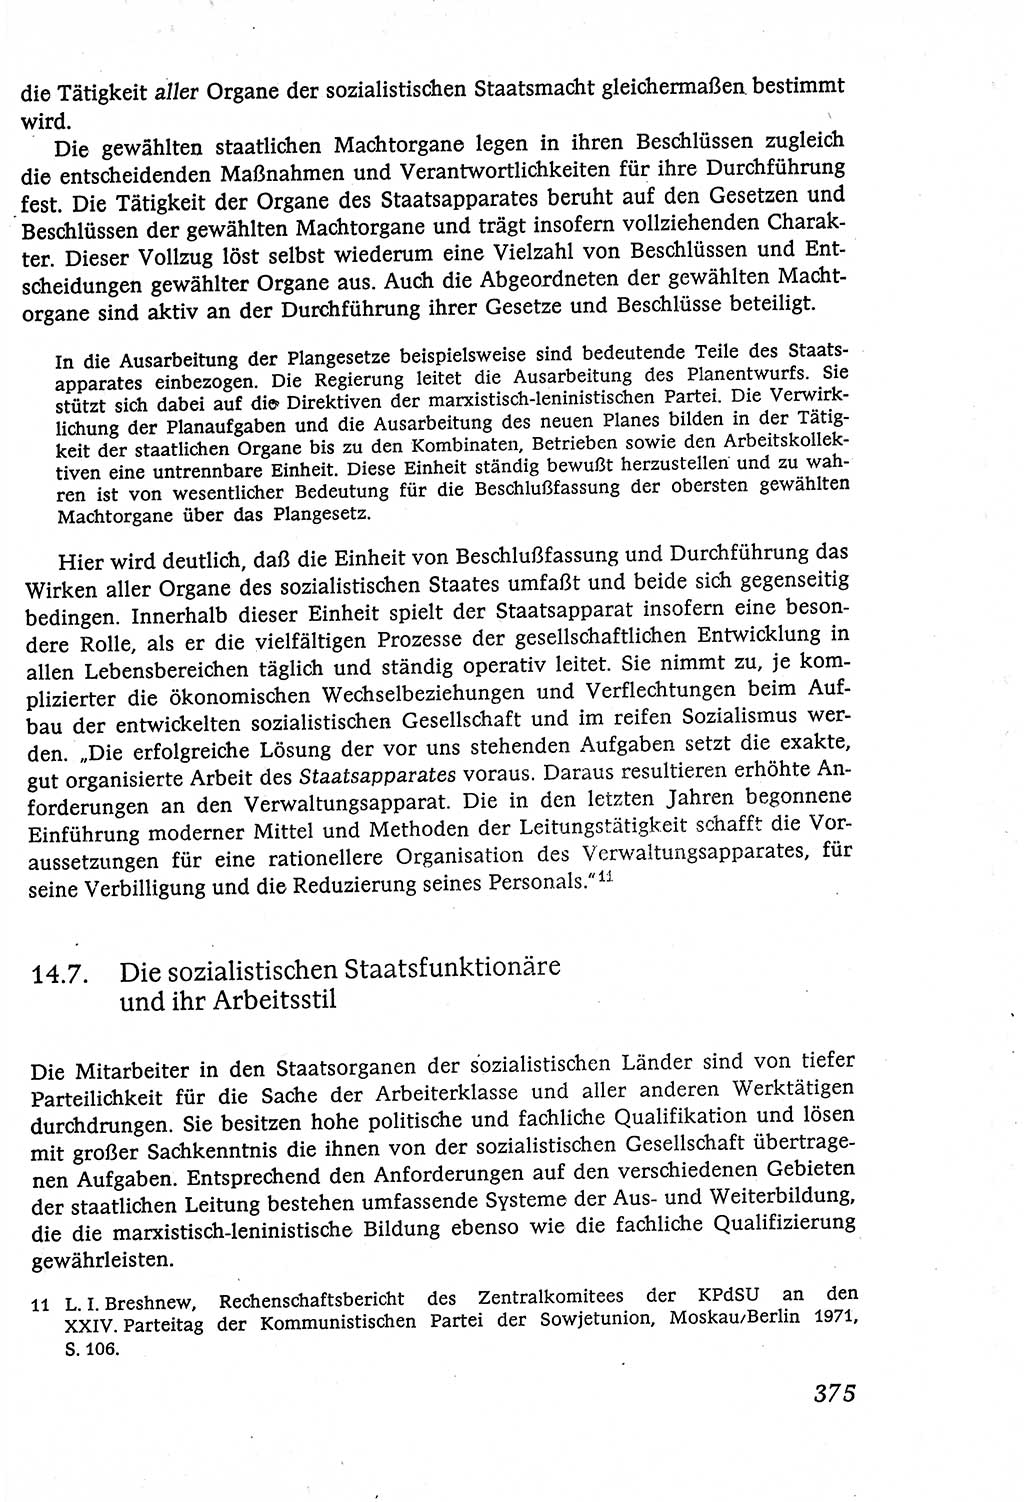 Marxistisch-leninistische (ML) Staats- und Rechtstheorie [Deutsche Demokratische Republik (DDR)], Lehrbuch 1980, Seite 375 (ML St.-R.-Th. DDR Lb. 1980, S. 375)